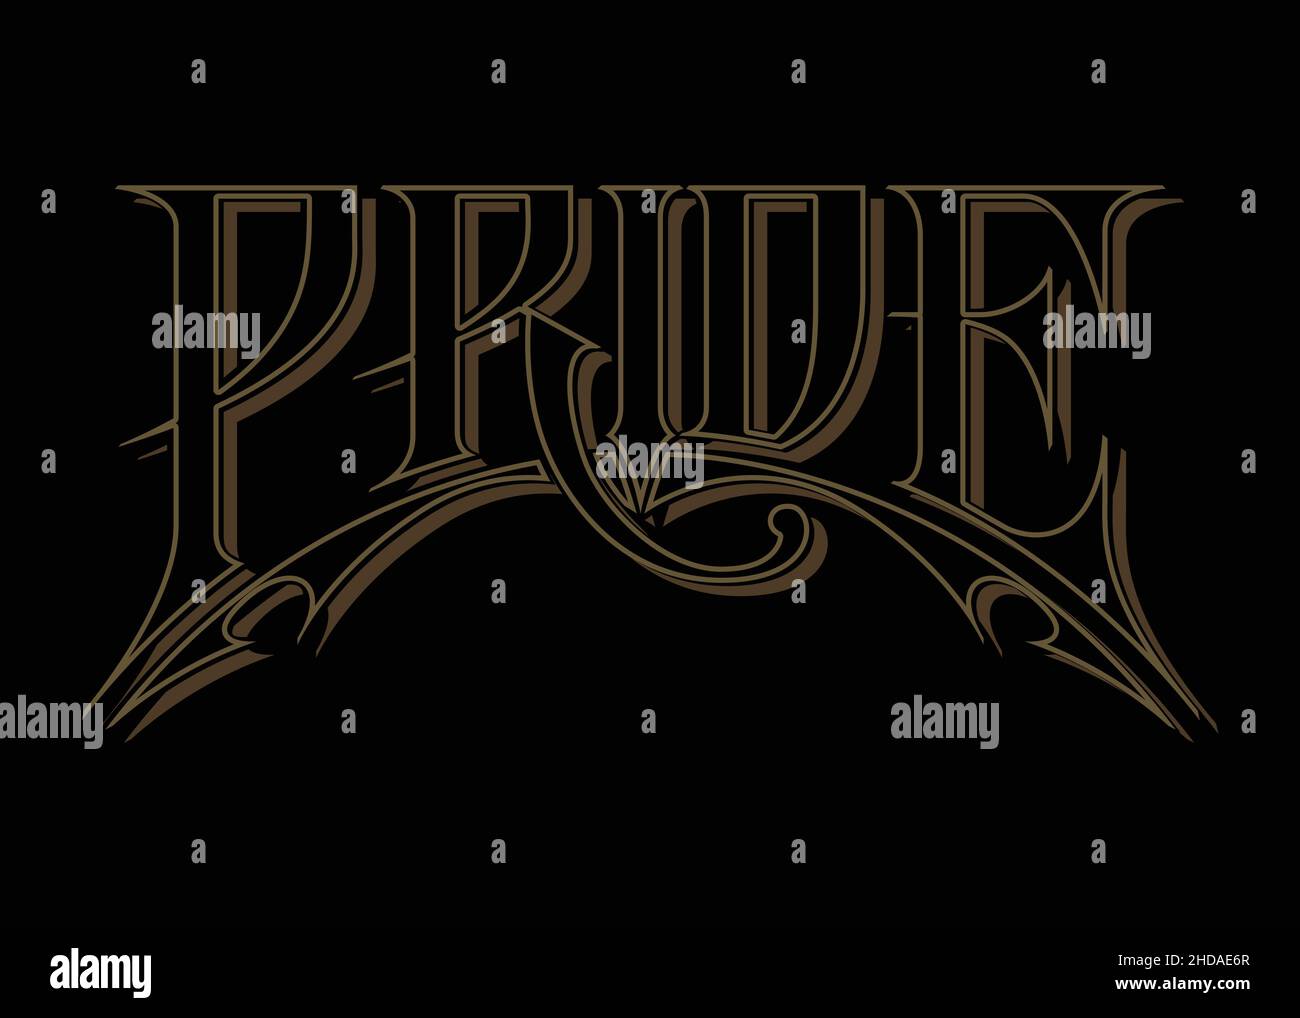 Pride – Viktorianisches Design Mit Handschriftzug. Gold und Schwarz Digitale Typografie-Illustration Stock Vektor